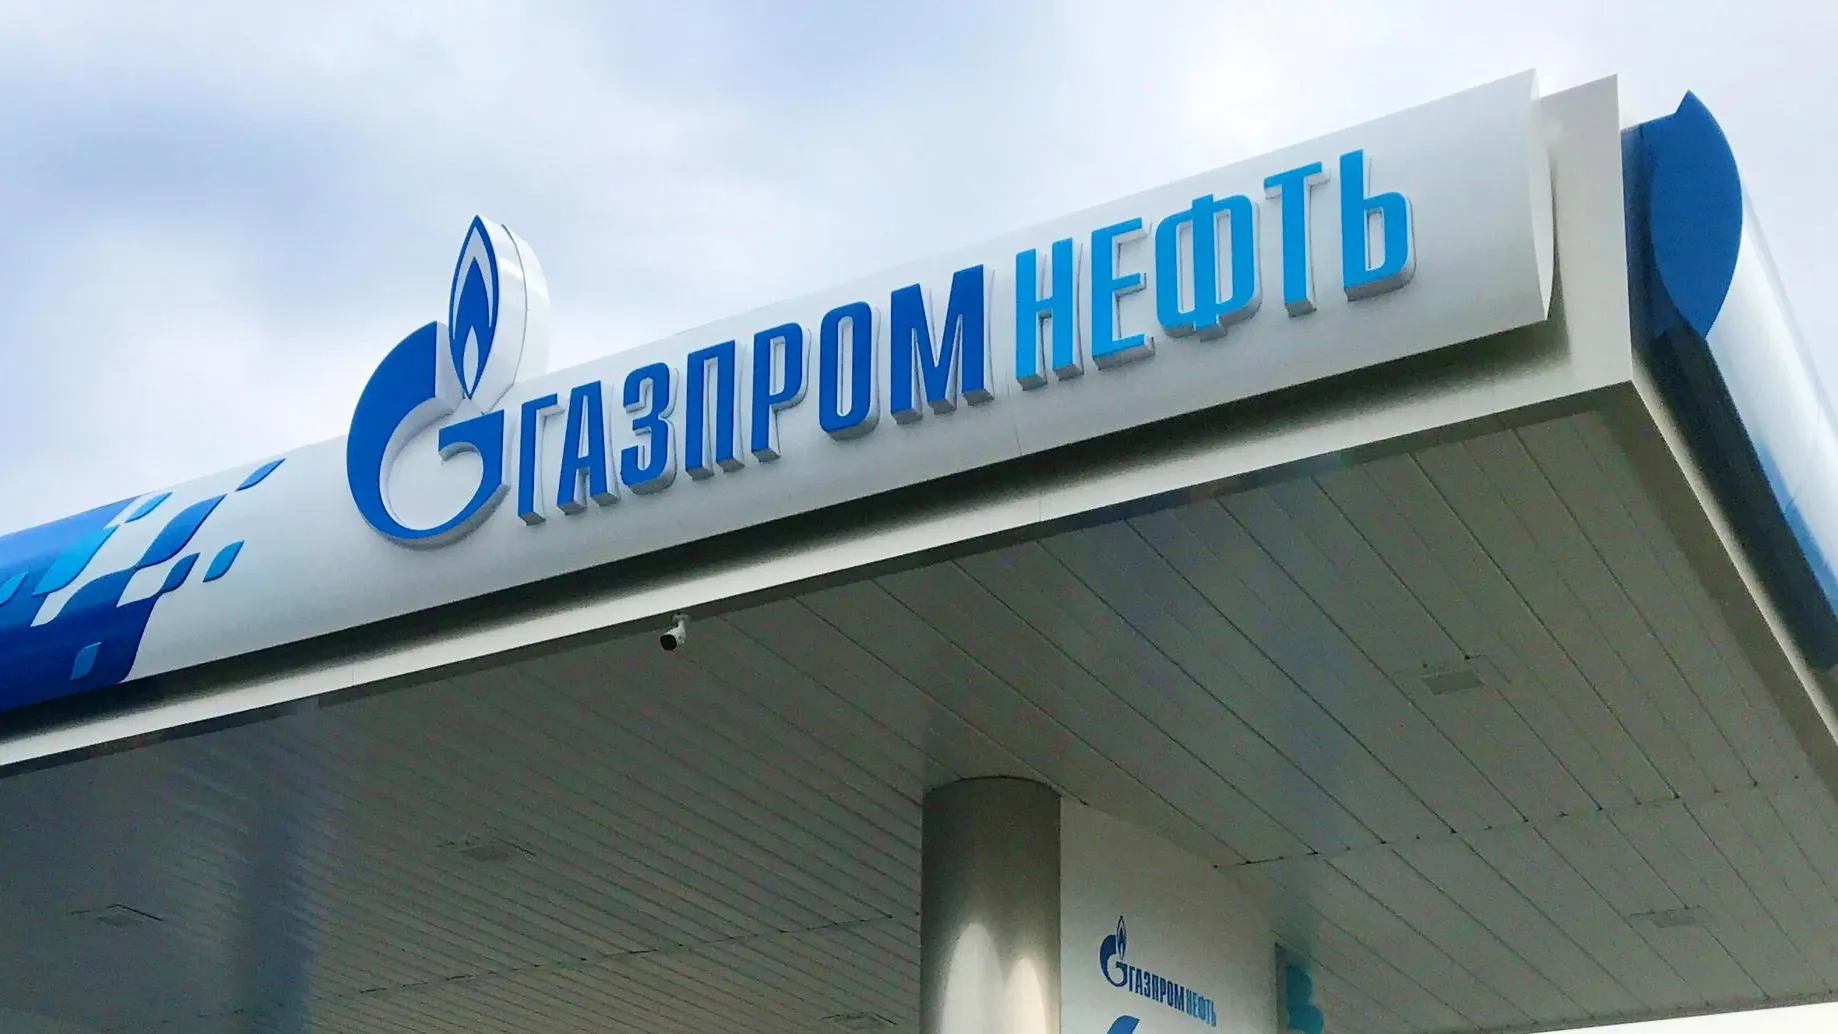 Сеть «Газпромнефть» открыла новую АЗС на Носовихинском шоссе в Московской области